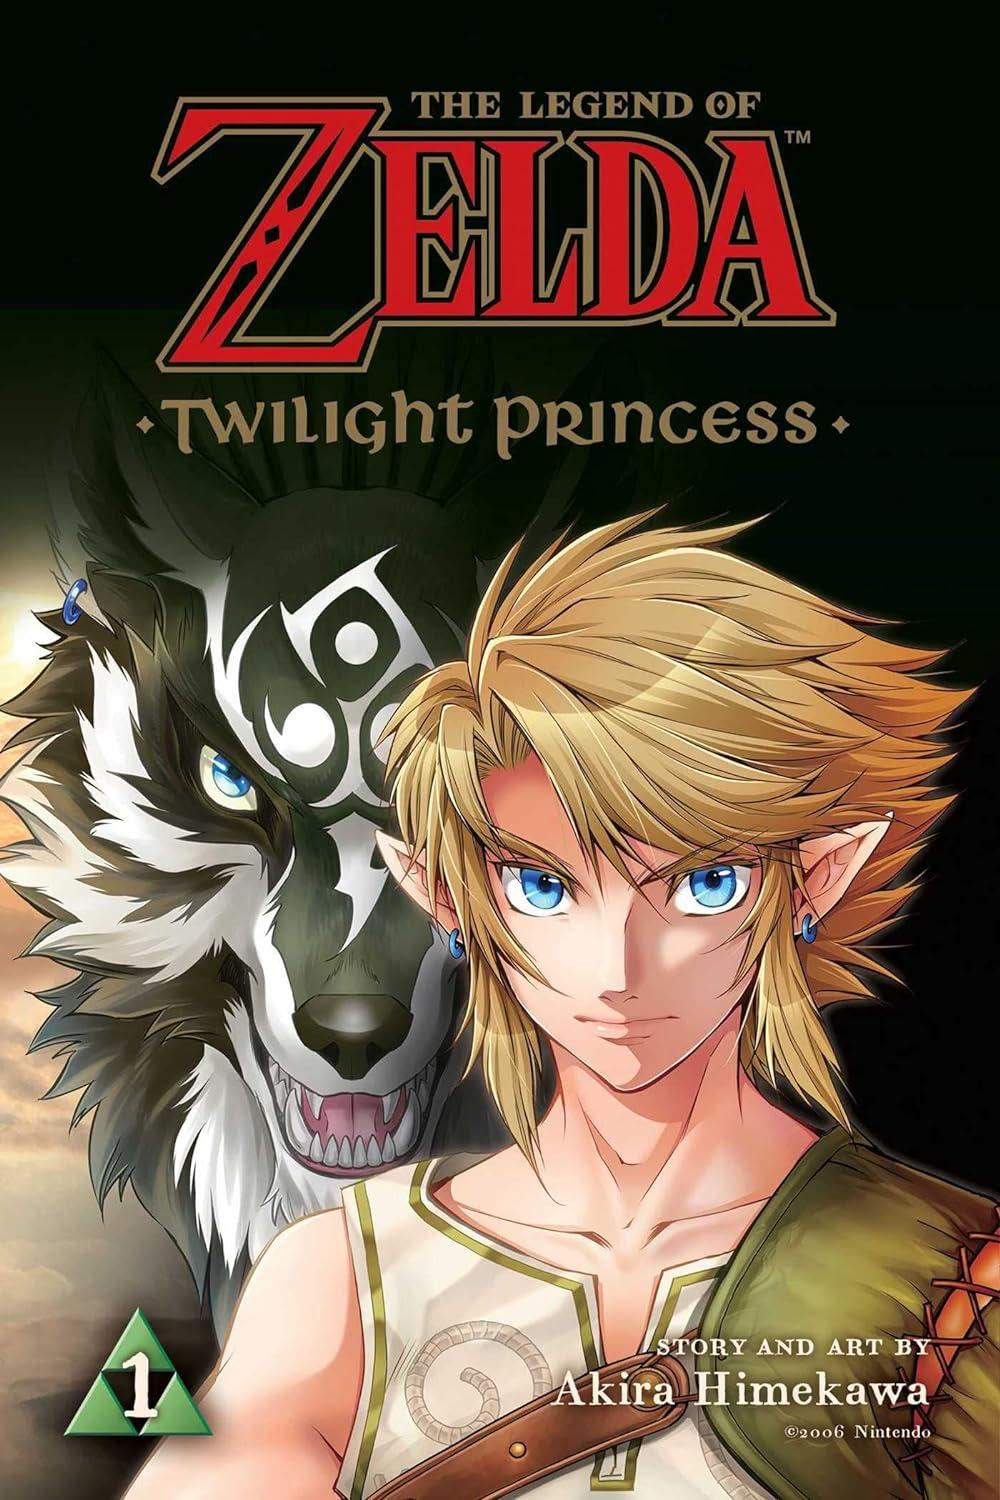 Den første bog i 'Twilight Princess' serie med grafiske romaner